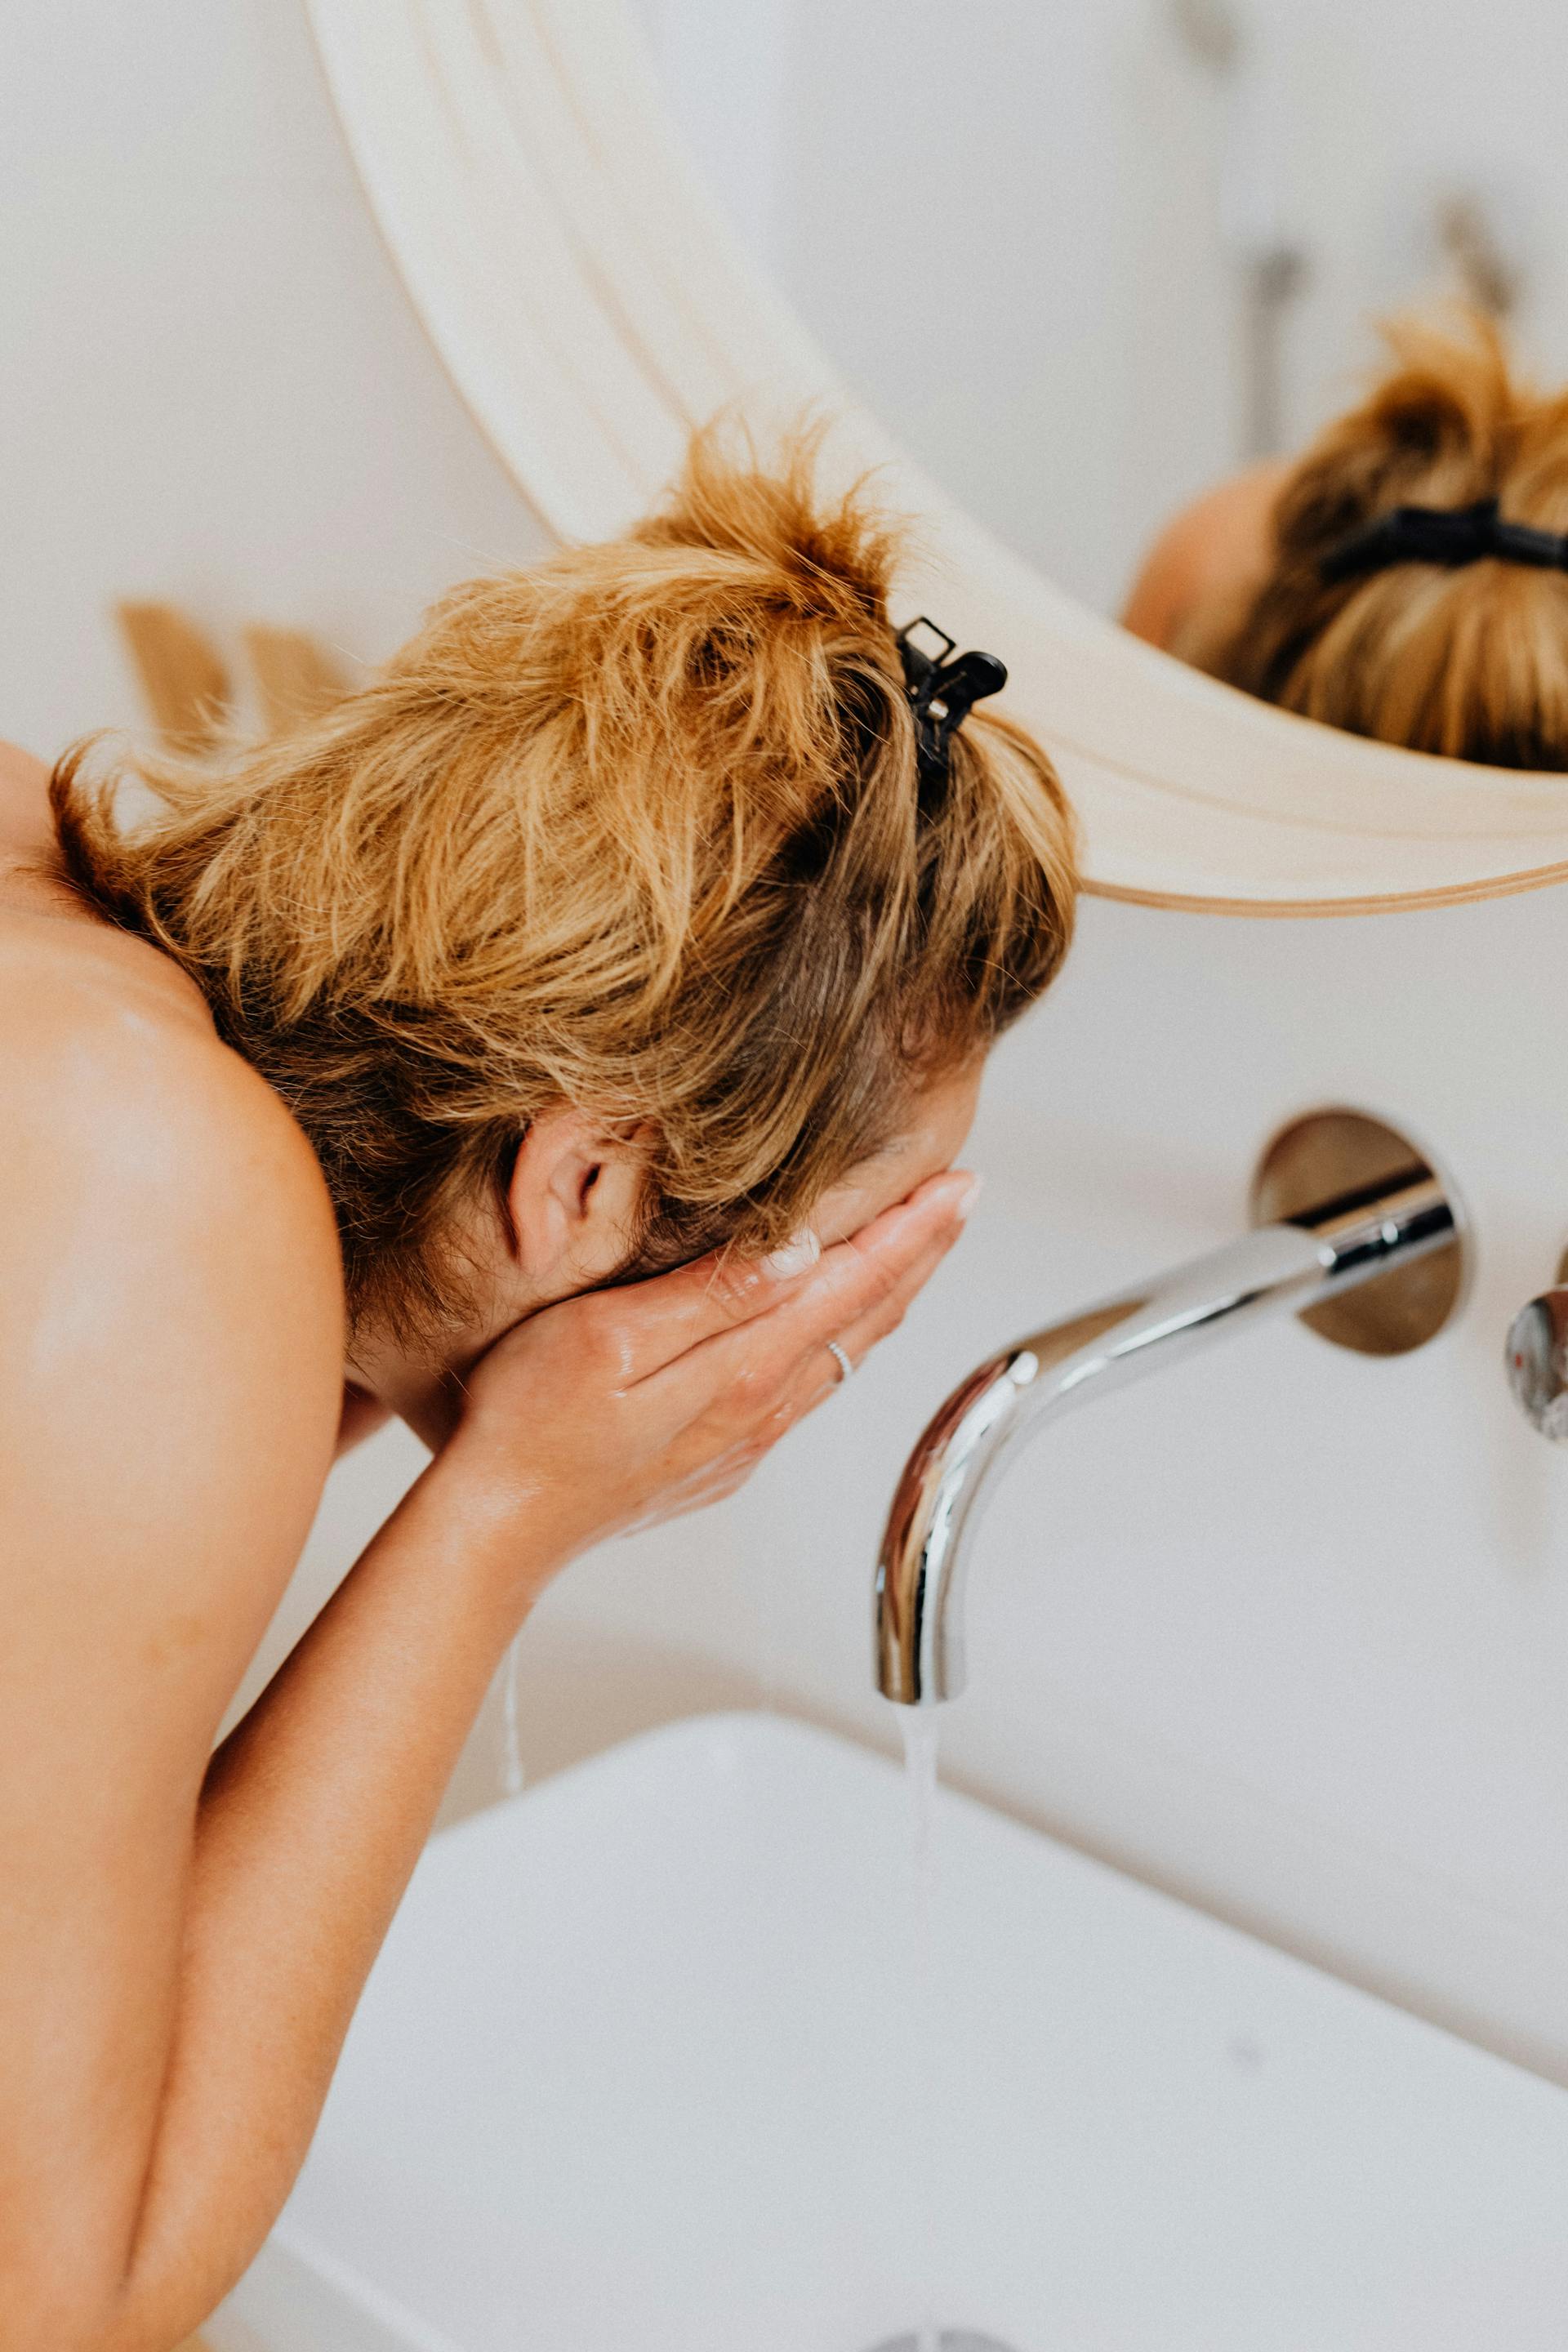 Une femme s'aspergeant le visage d'eau dans les toilettes | Source : Pexels